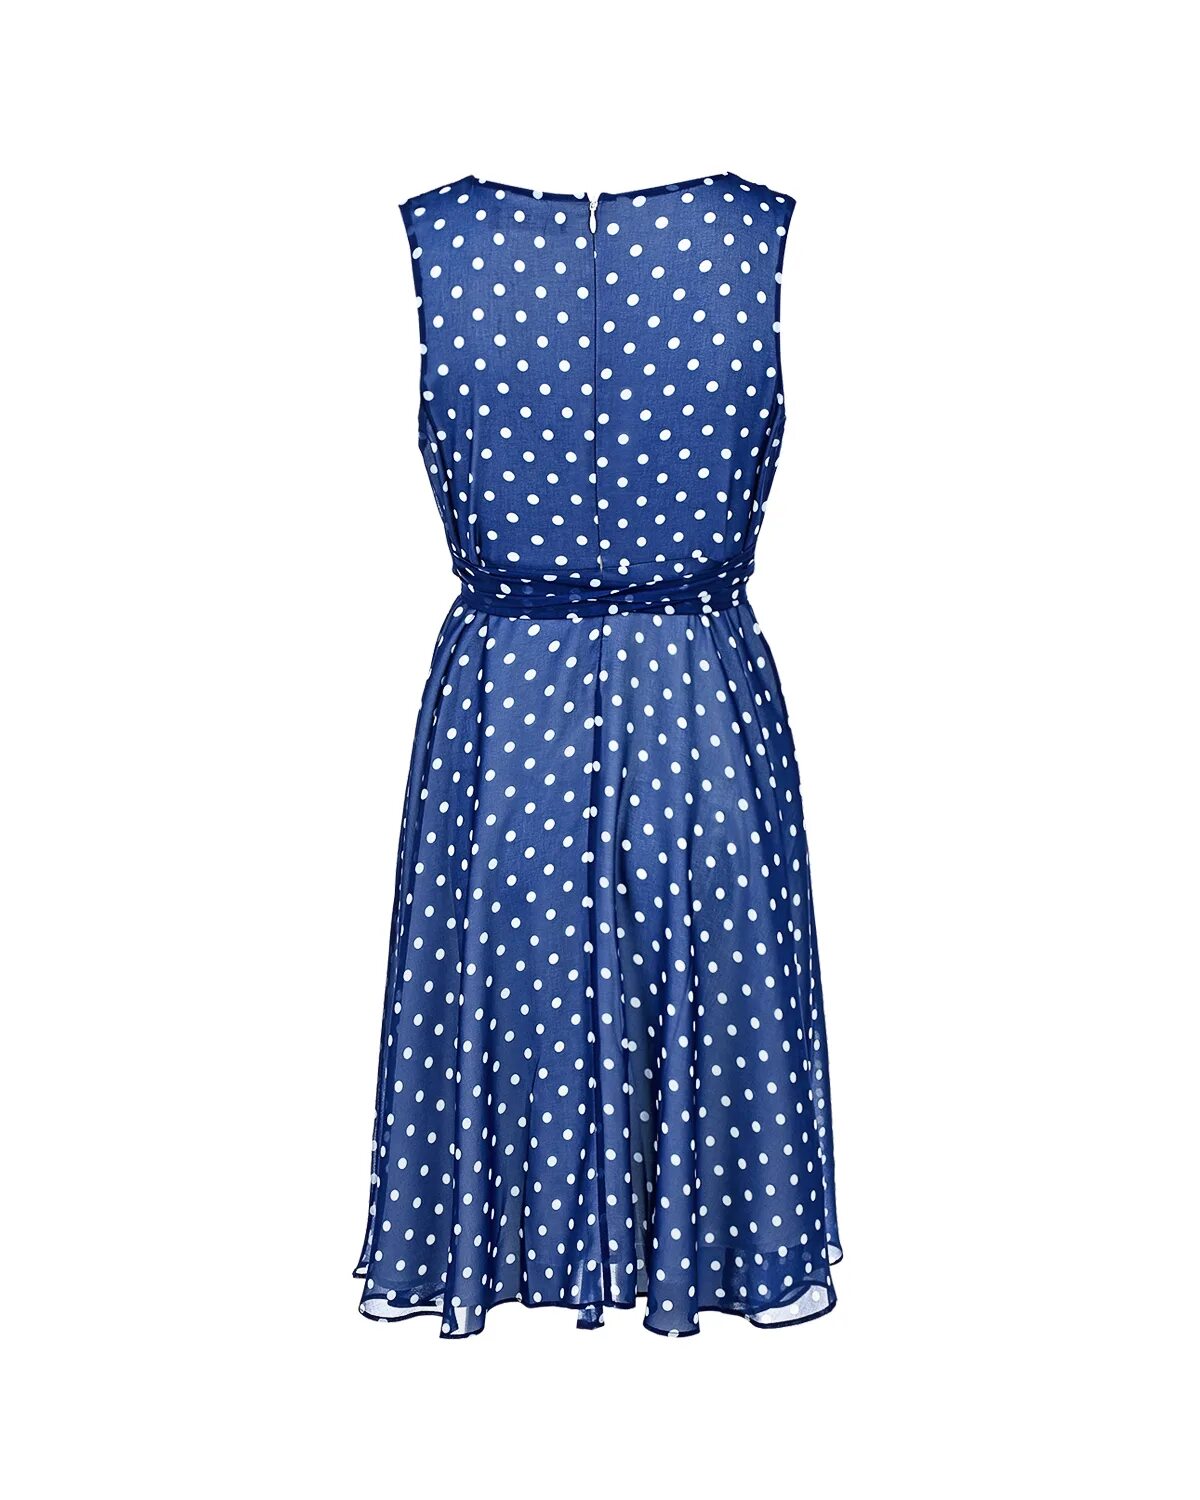 Pietro Brunelli одежда для беременных платье горошек. Платье Dali 5348 синий горошек. Синее платье в белый горох. Голубое платье в горошек. Синее платье в горох